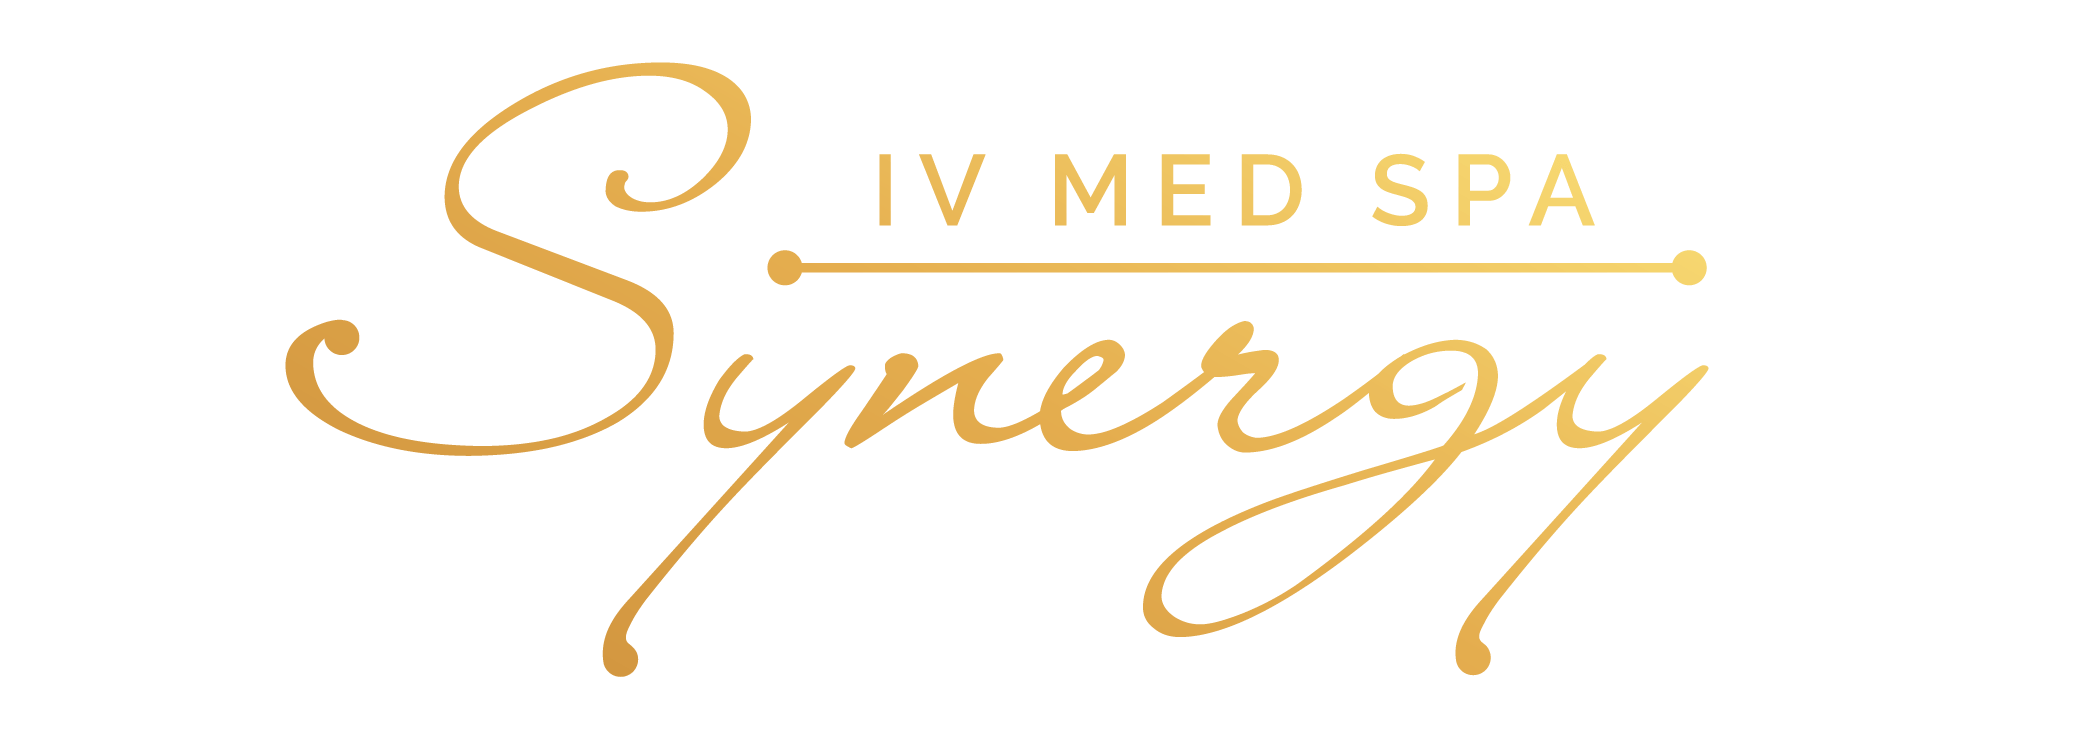 synergy-iv-med-spa logo